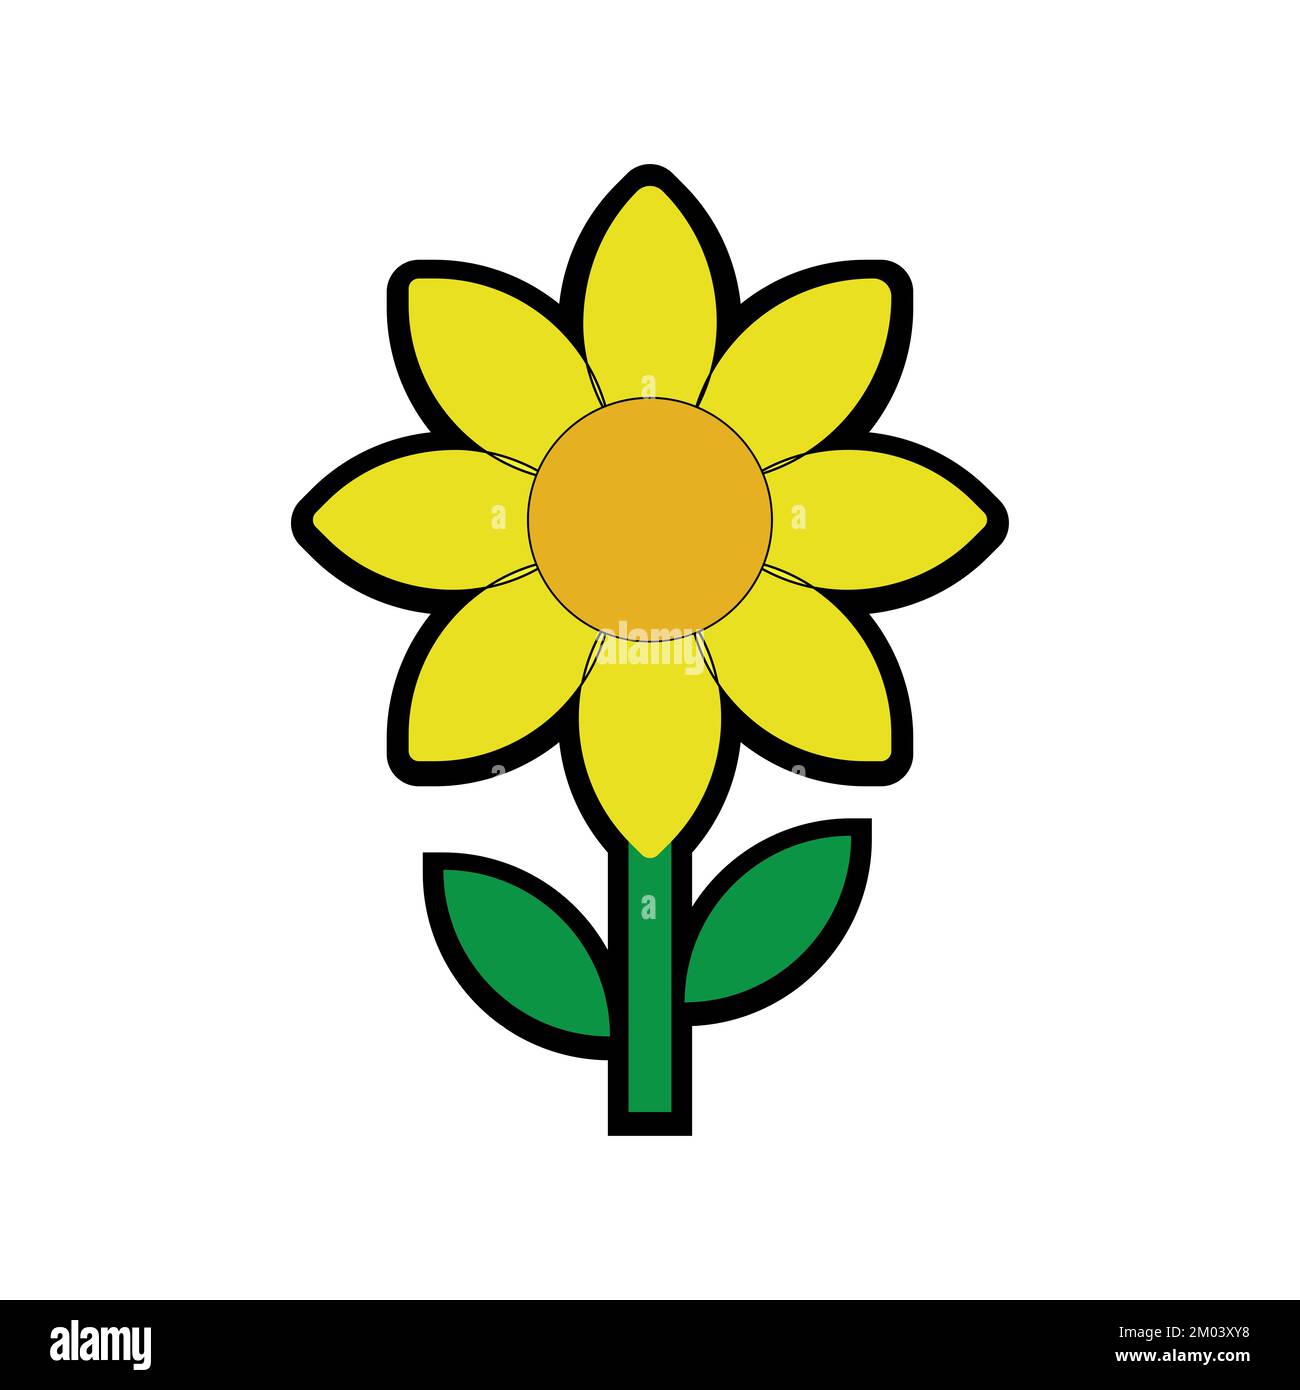 Wunderschöne Sonnenblumen-Vektorbilder, Zeichentrickblumen-Illustrationen, flache Blumensymbole Stockfoto